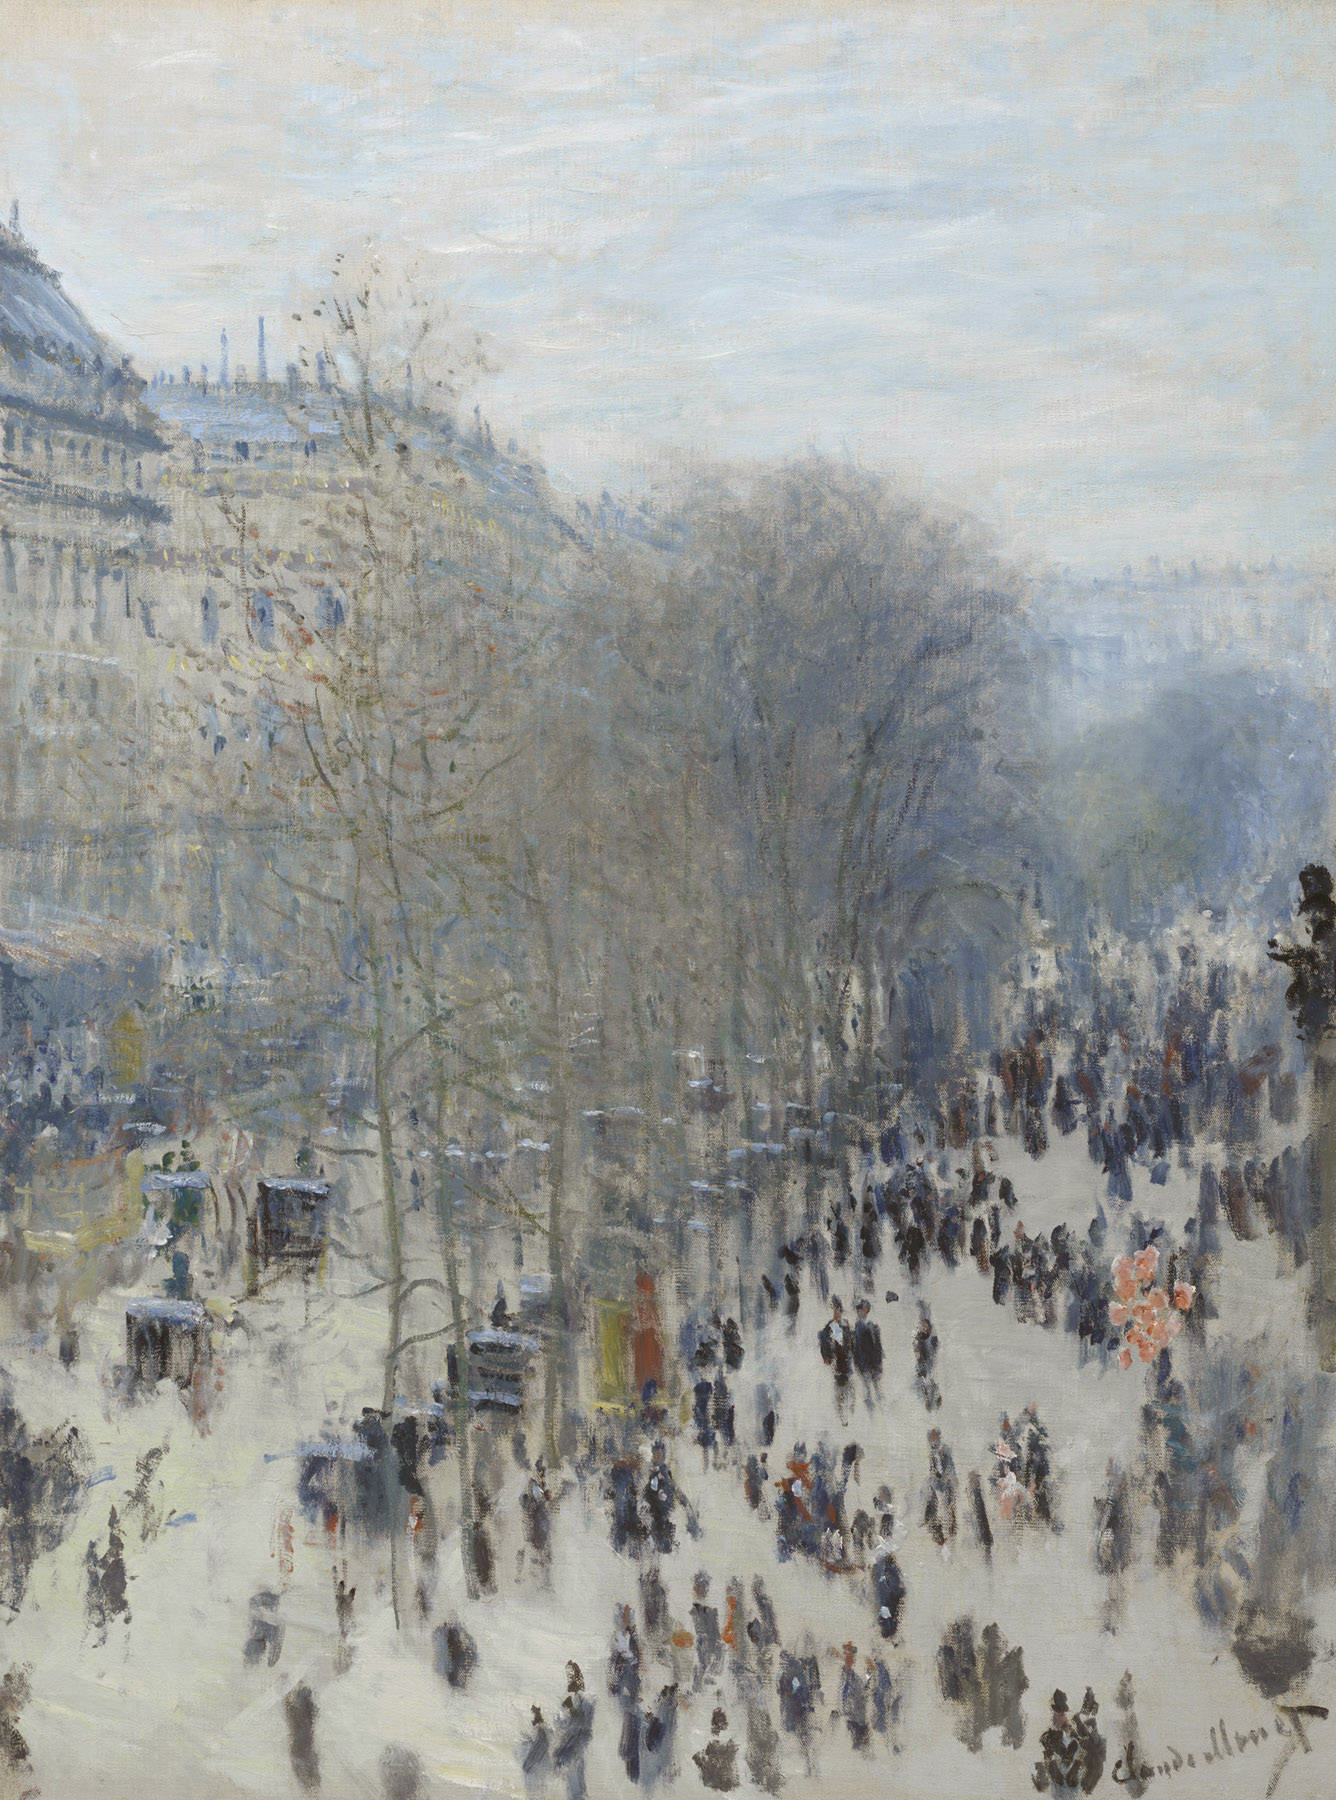 Bulevardul Capucinilor by Claude Monet - 1873 - 1874 - 60.3 x 80.3 cm 